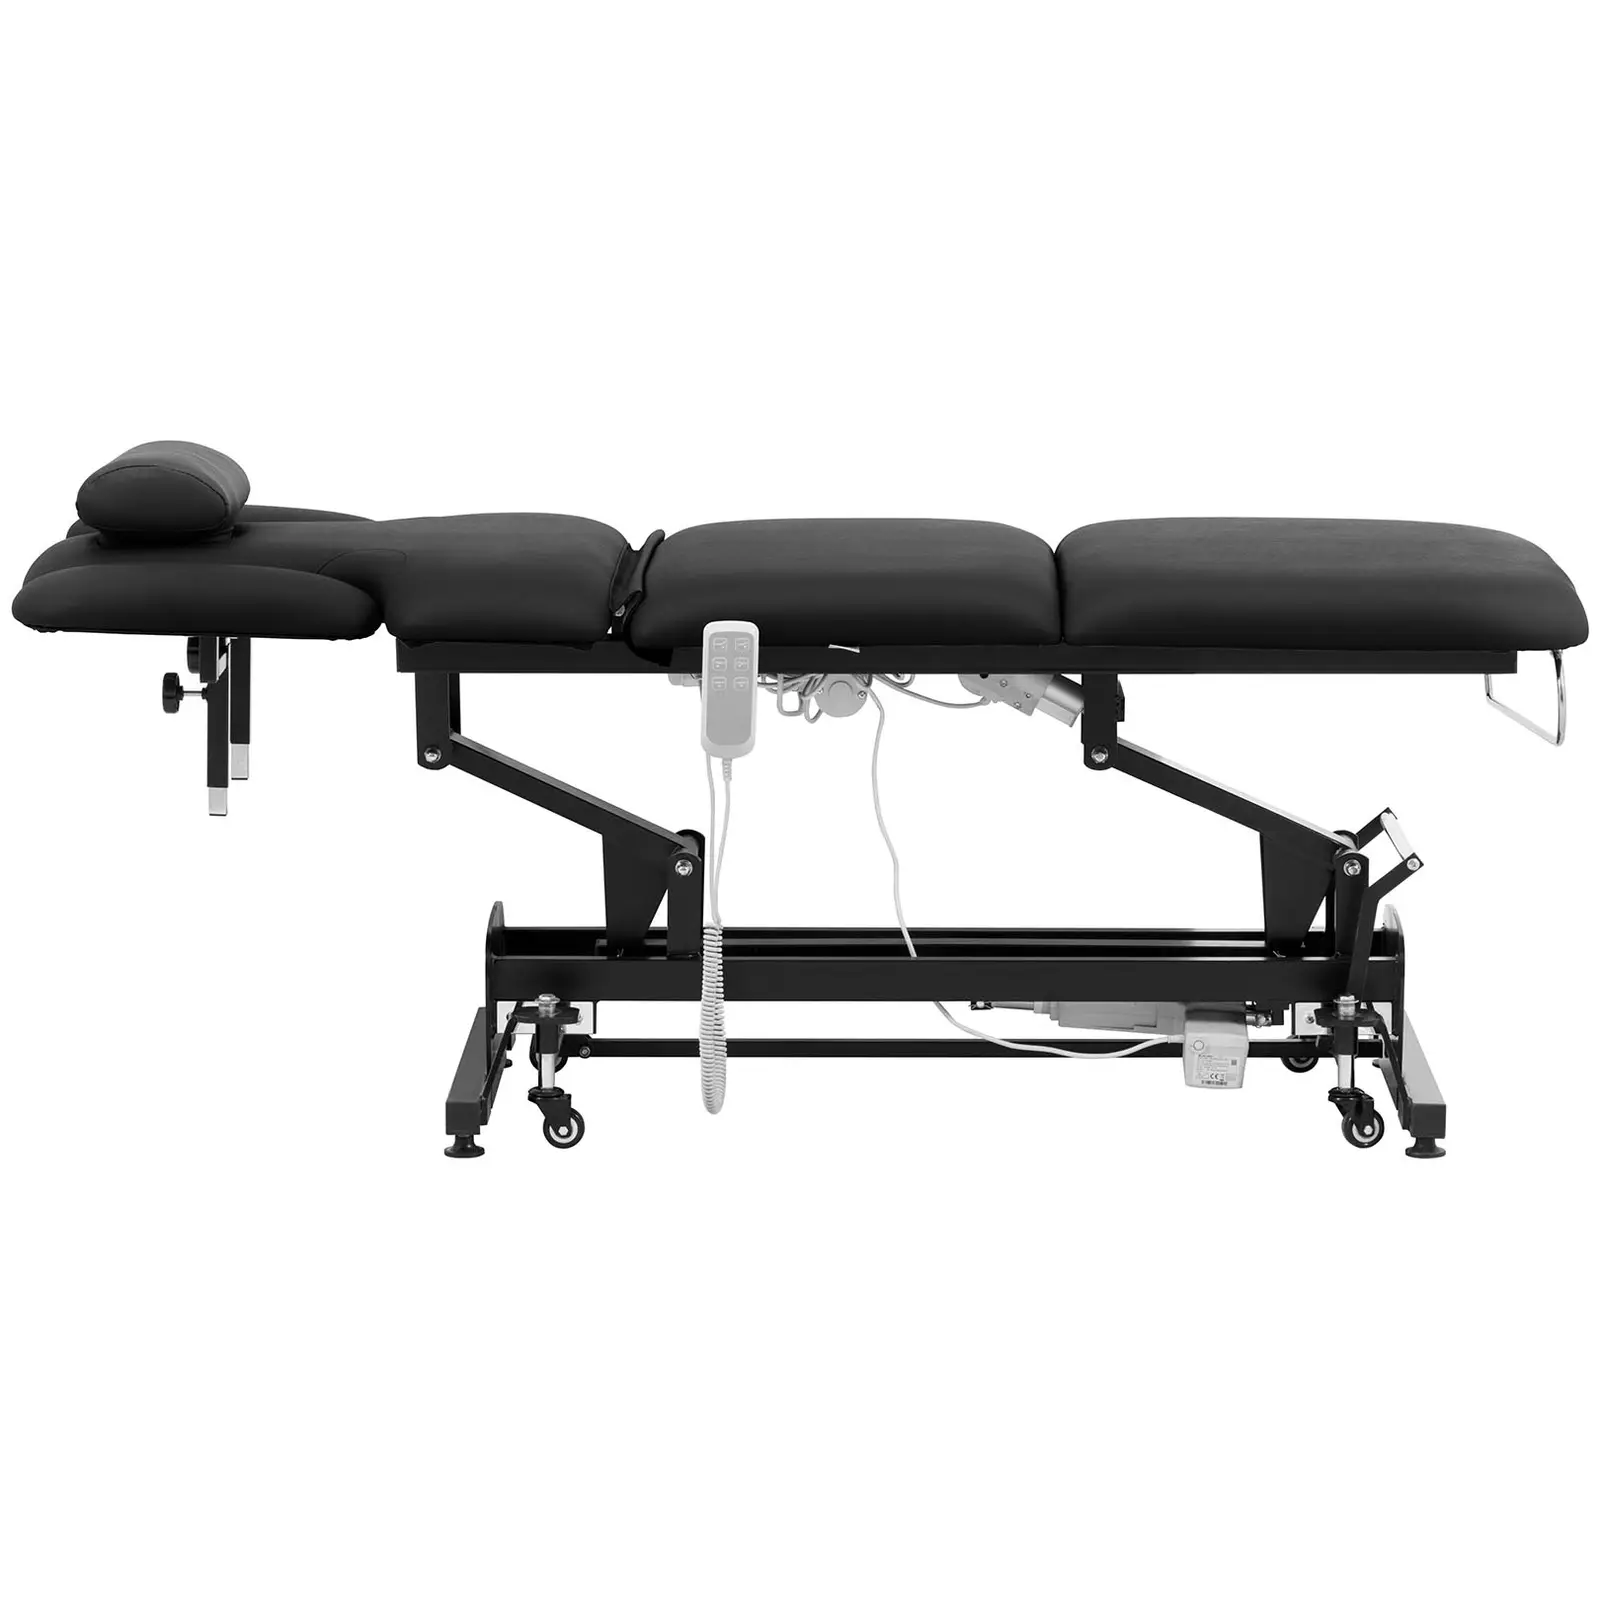 Lettino massaggio elettrico - 3 motori - 250 kg - nero